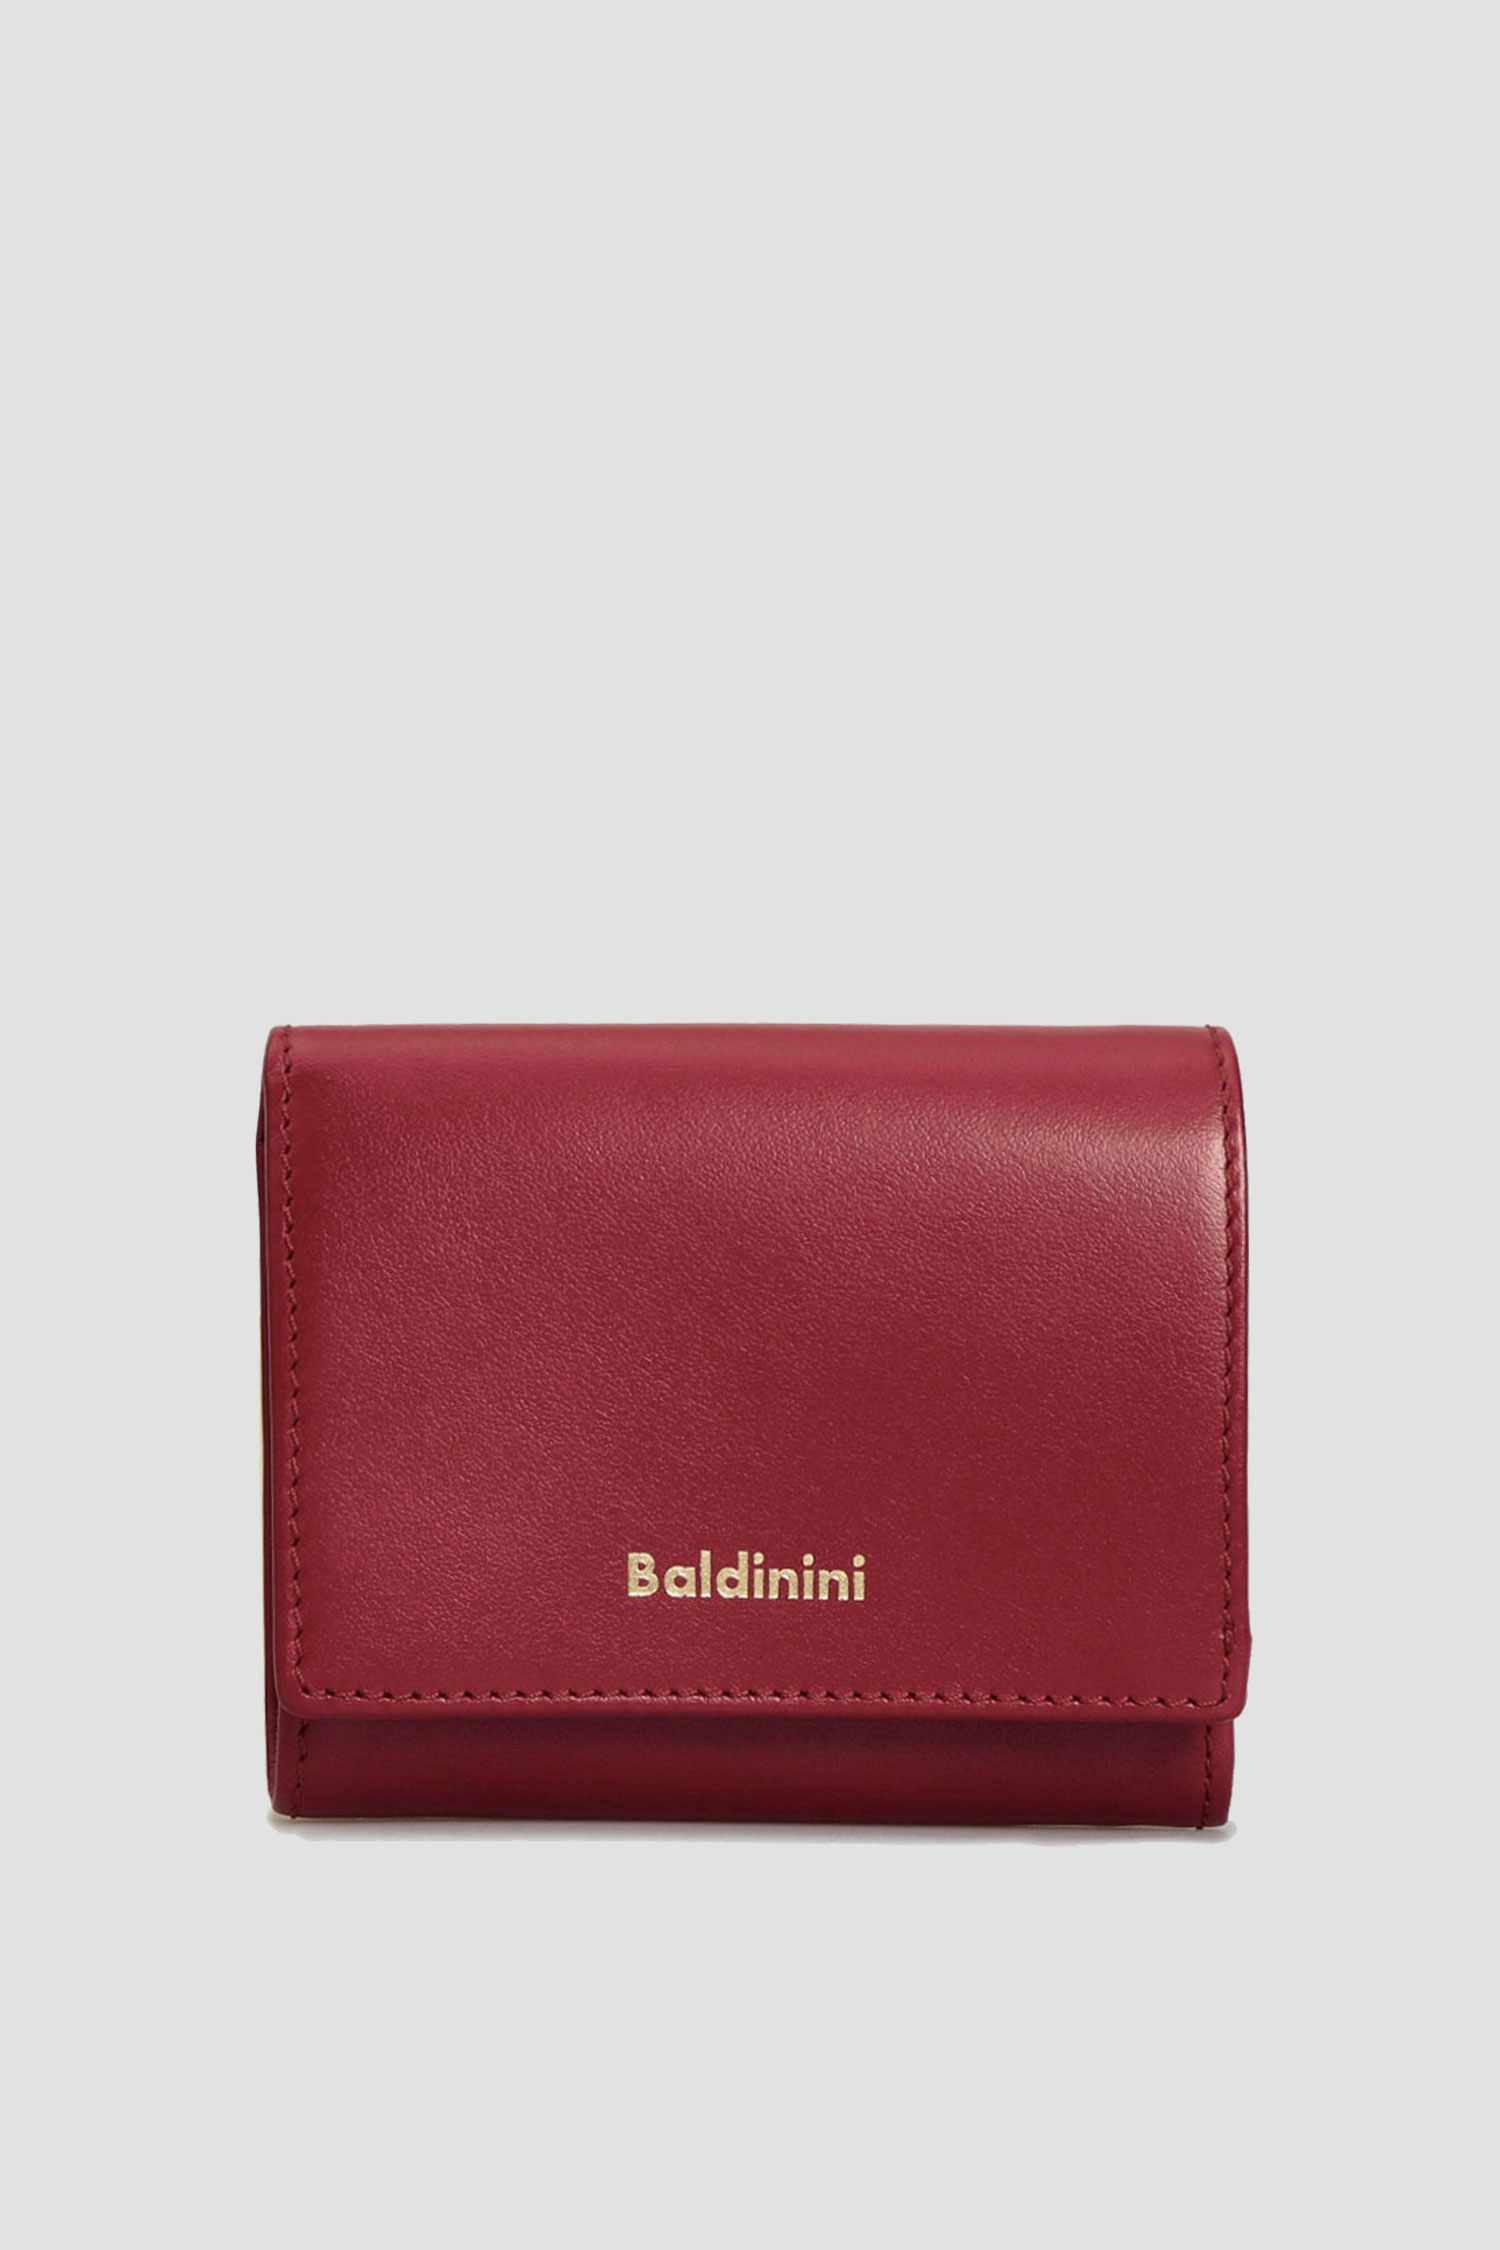 Бордовый кожаный кошелек для девушек Baldinini P2B005FIRE;7040